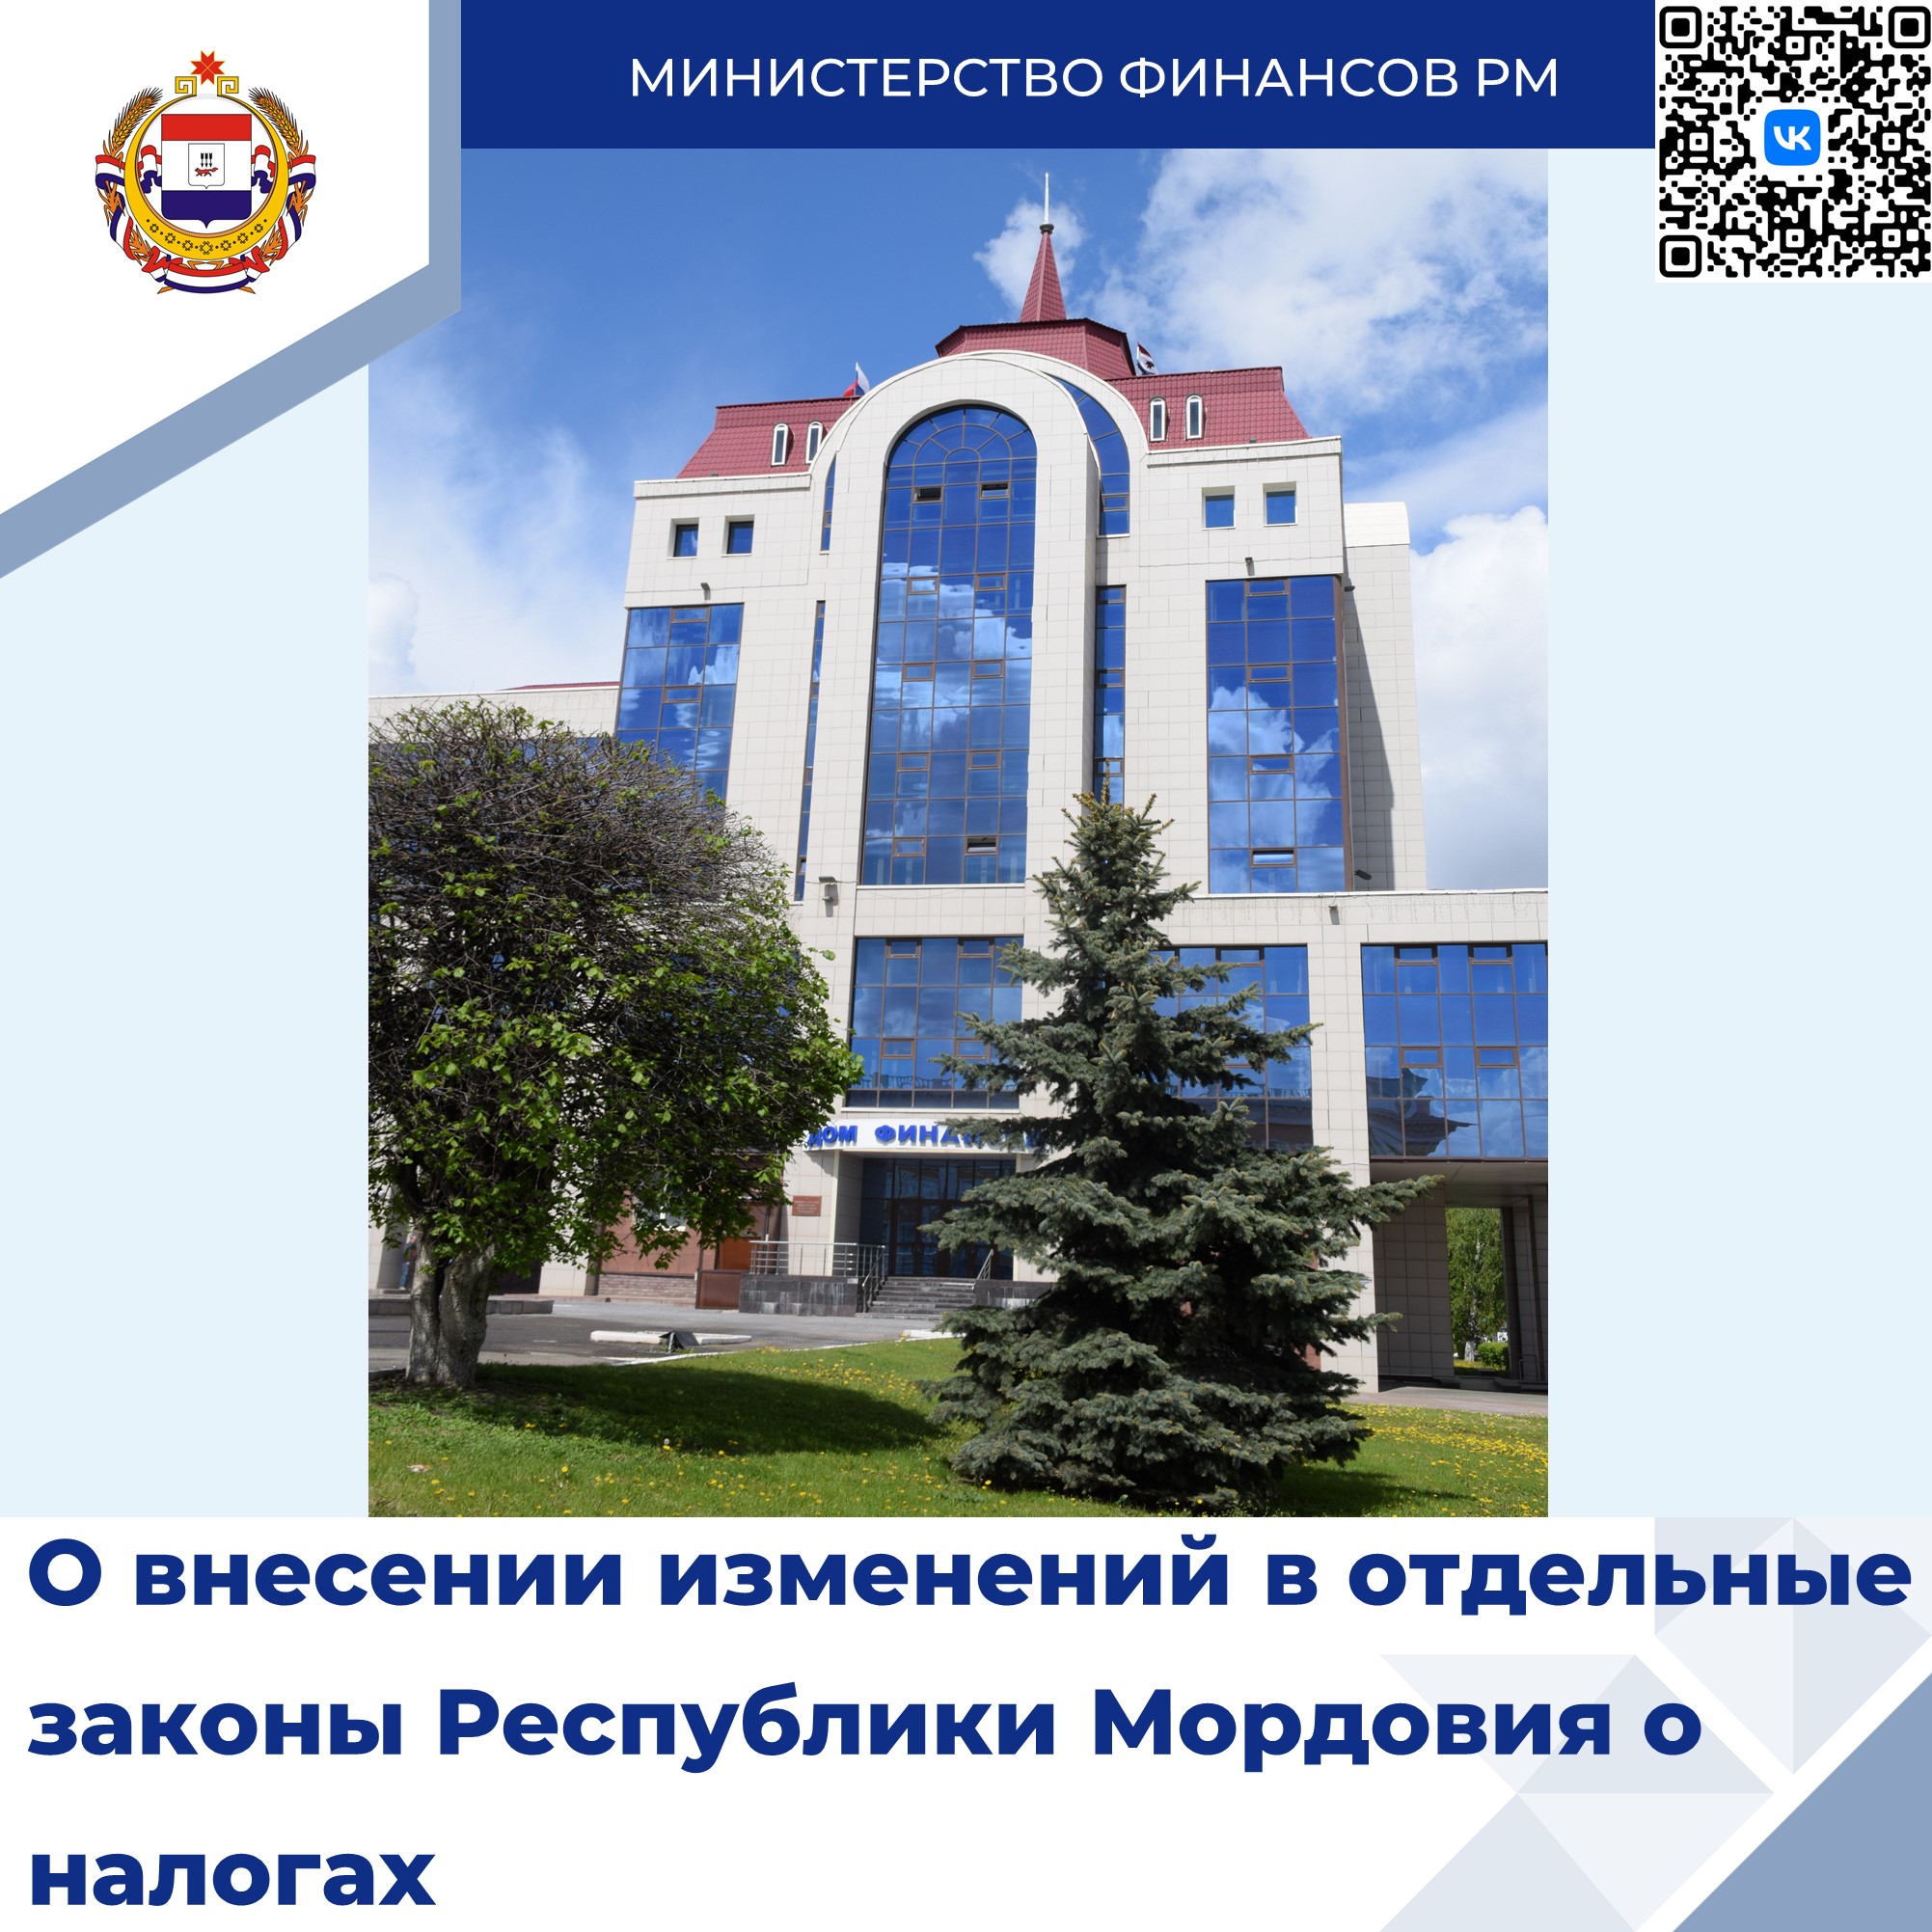 Сегодня состоялась сессия Государственного Собрания Республики Мордовия